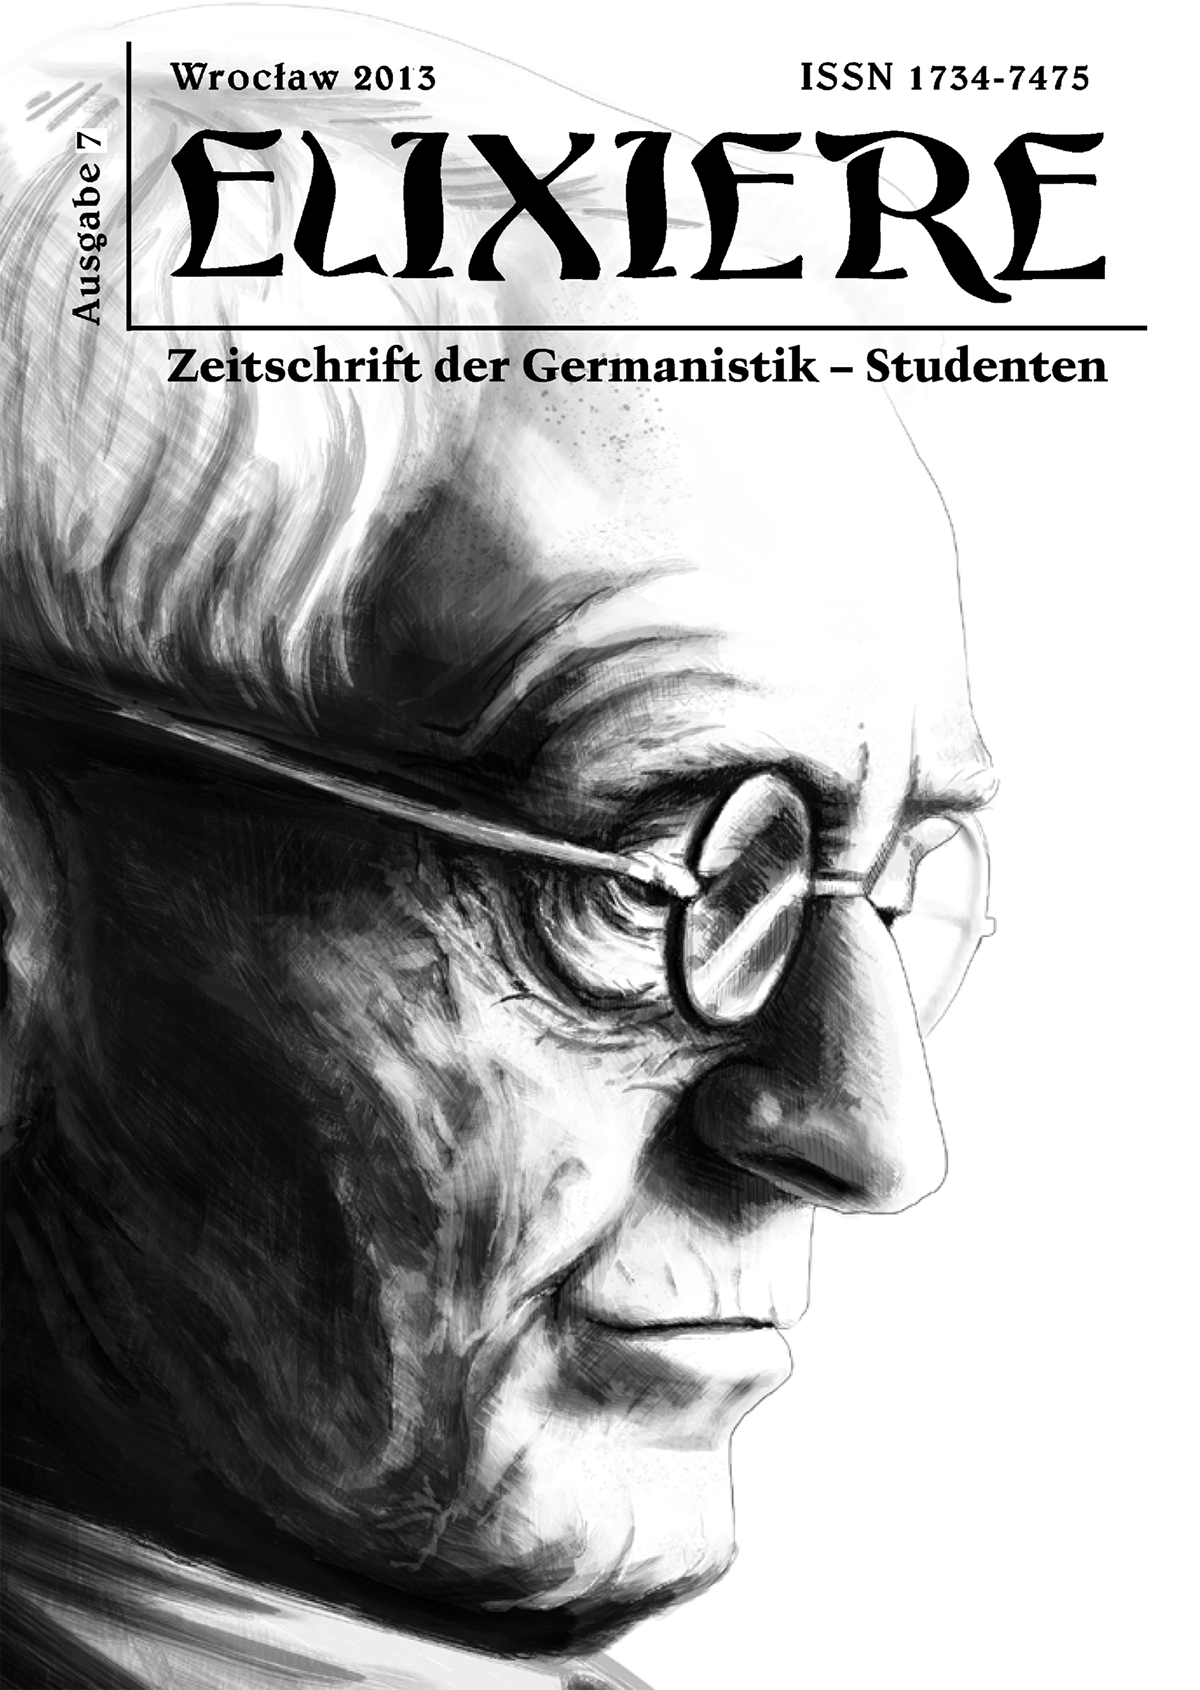 poet germany cover magazine